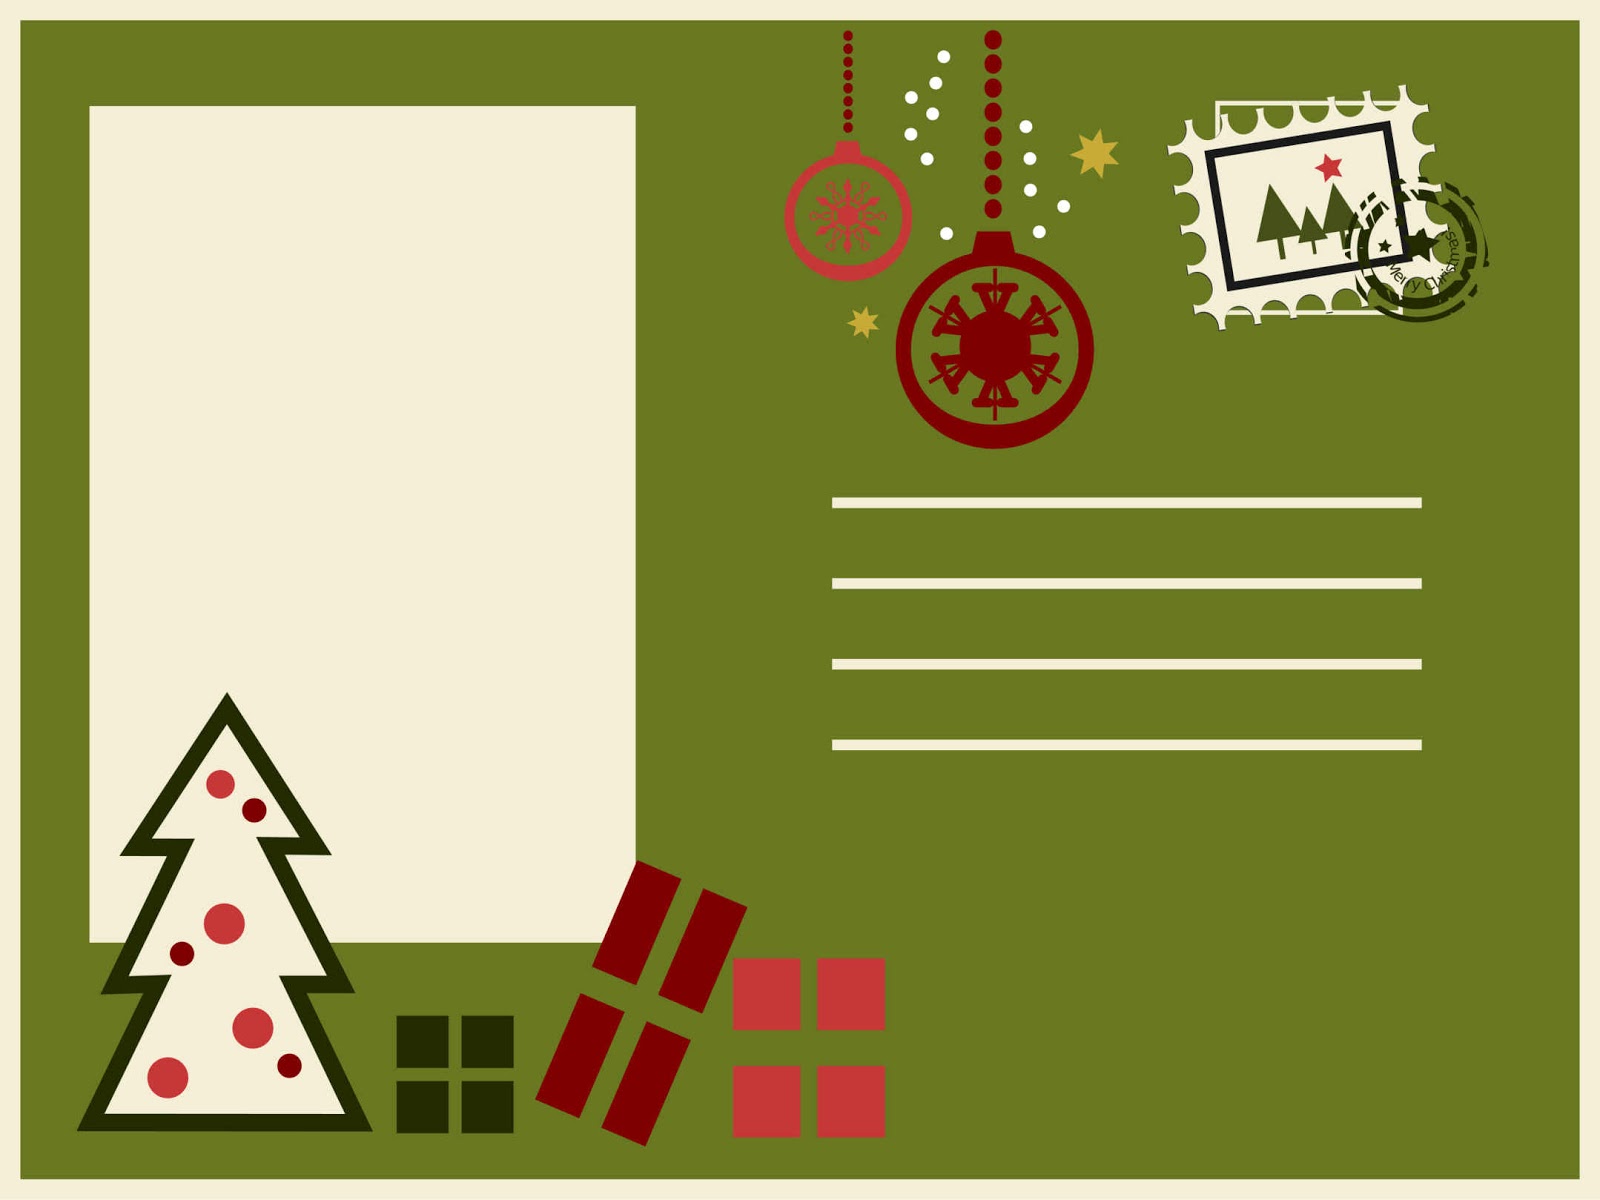 Tarjetas de navidad para imprimir - Imagenes de navidad